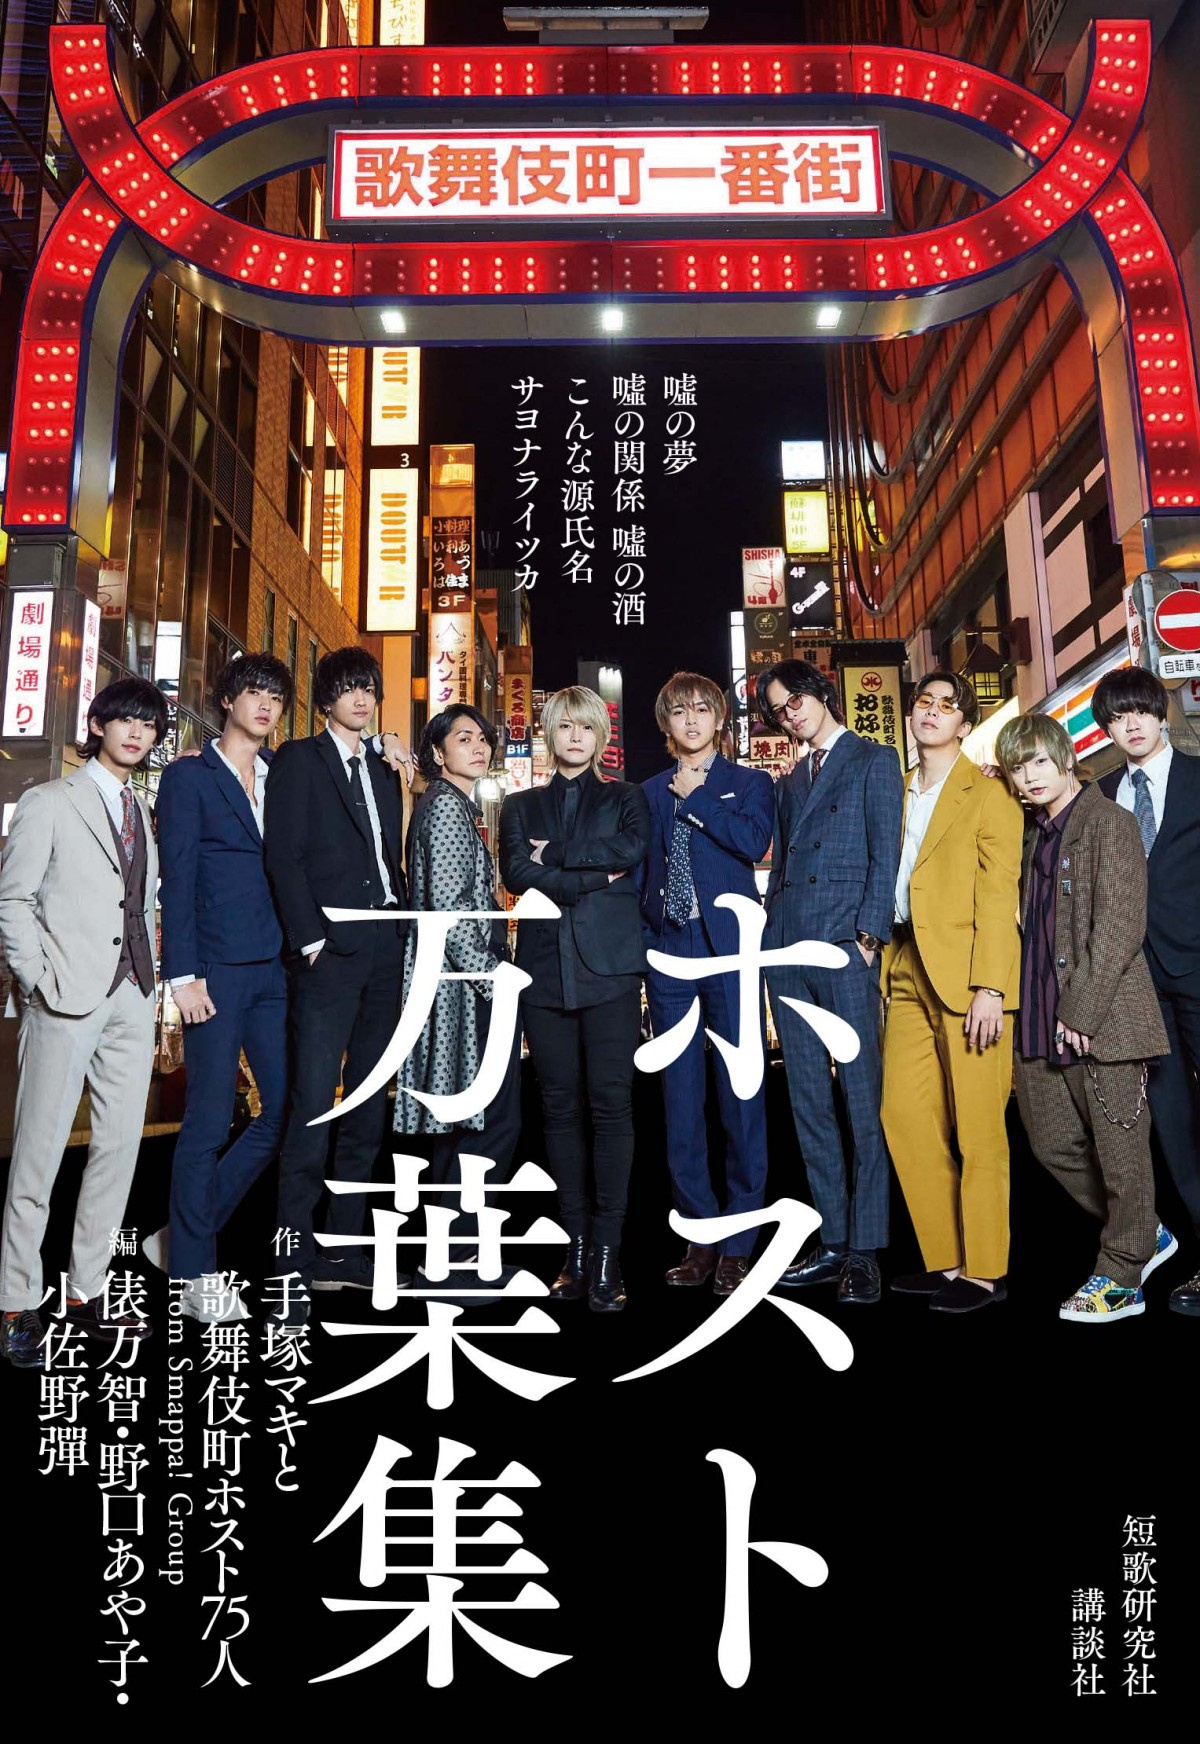 歌舞伎町ホストによる歌会が書籍化 コロナ禍 夜の街 で切実な思いを詠む カラダは離すもココロは密で Oricon News